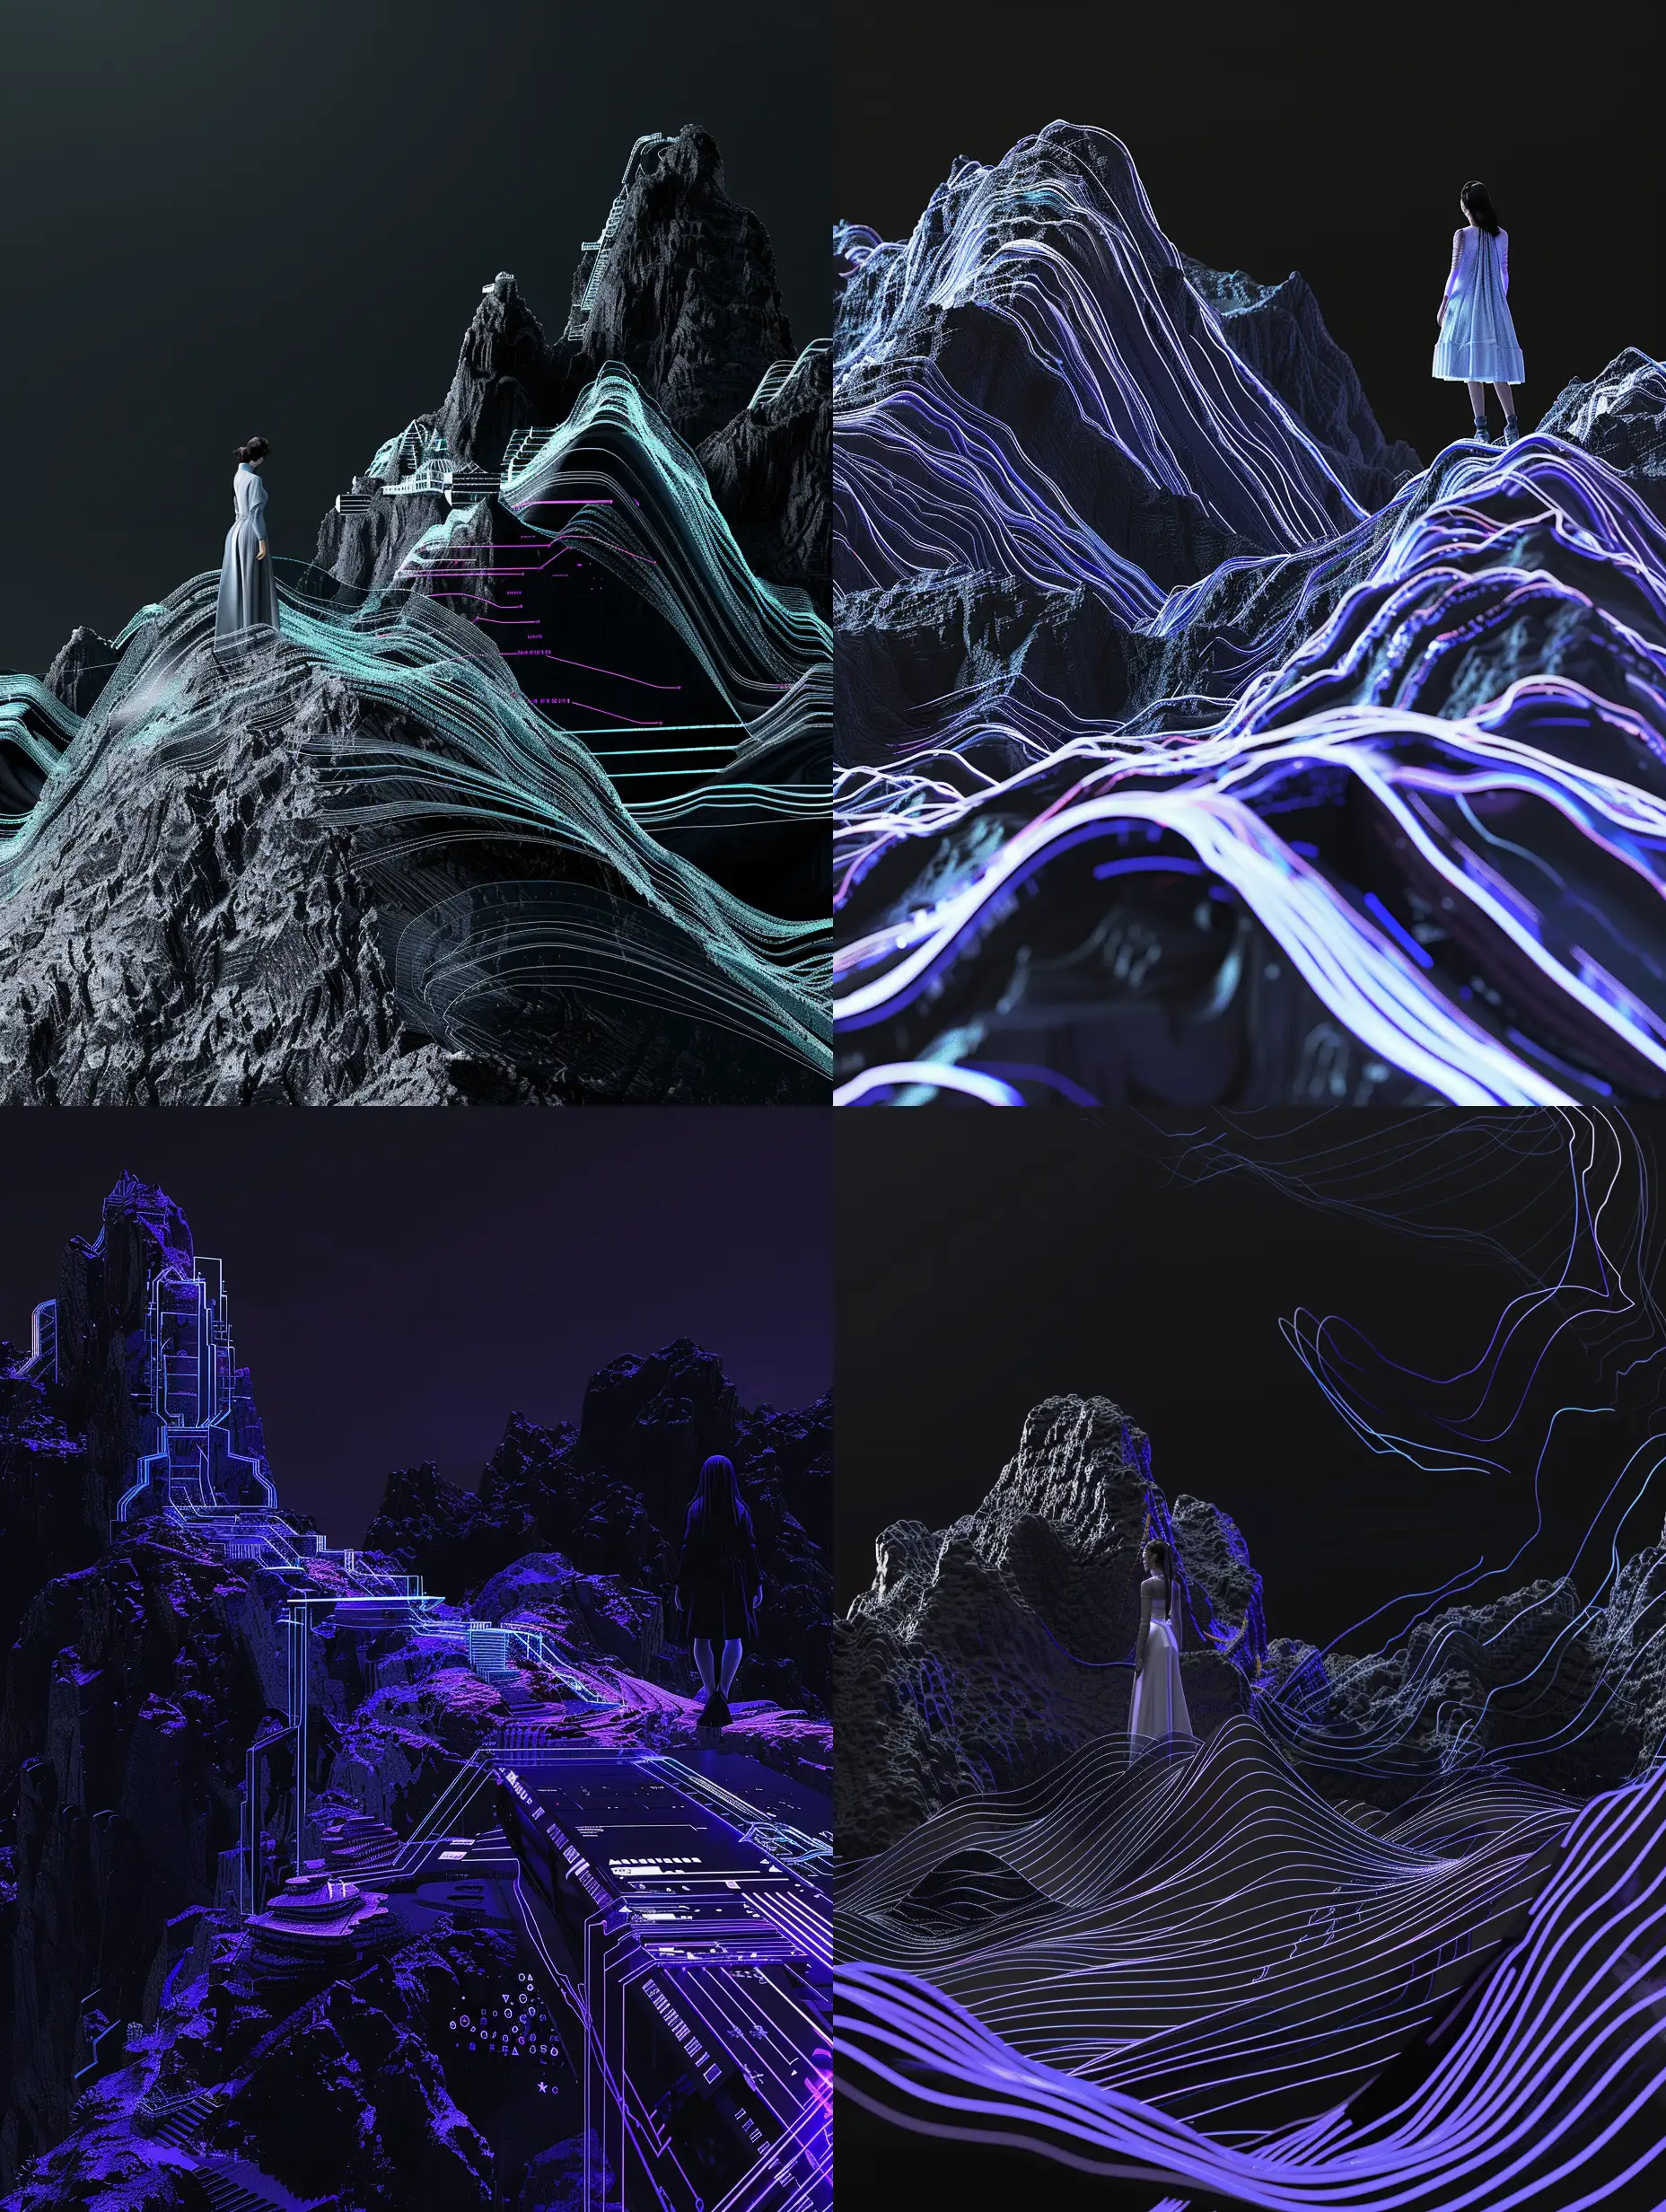 一个机械感3d山水，山上站着一个女人，黑色背景和蓝紫科技，时尚，中国风，线条感，中国传统文化，传统山水，高科技未来主义风格，超高清，C4D渲染，精细化描述，8k